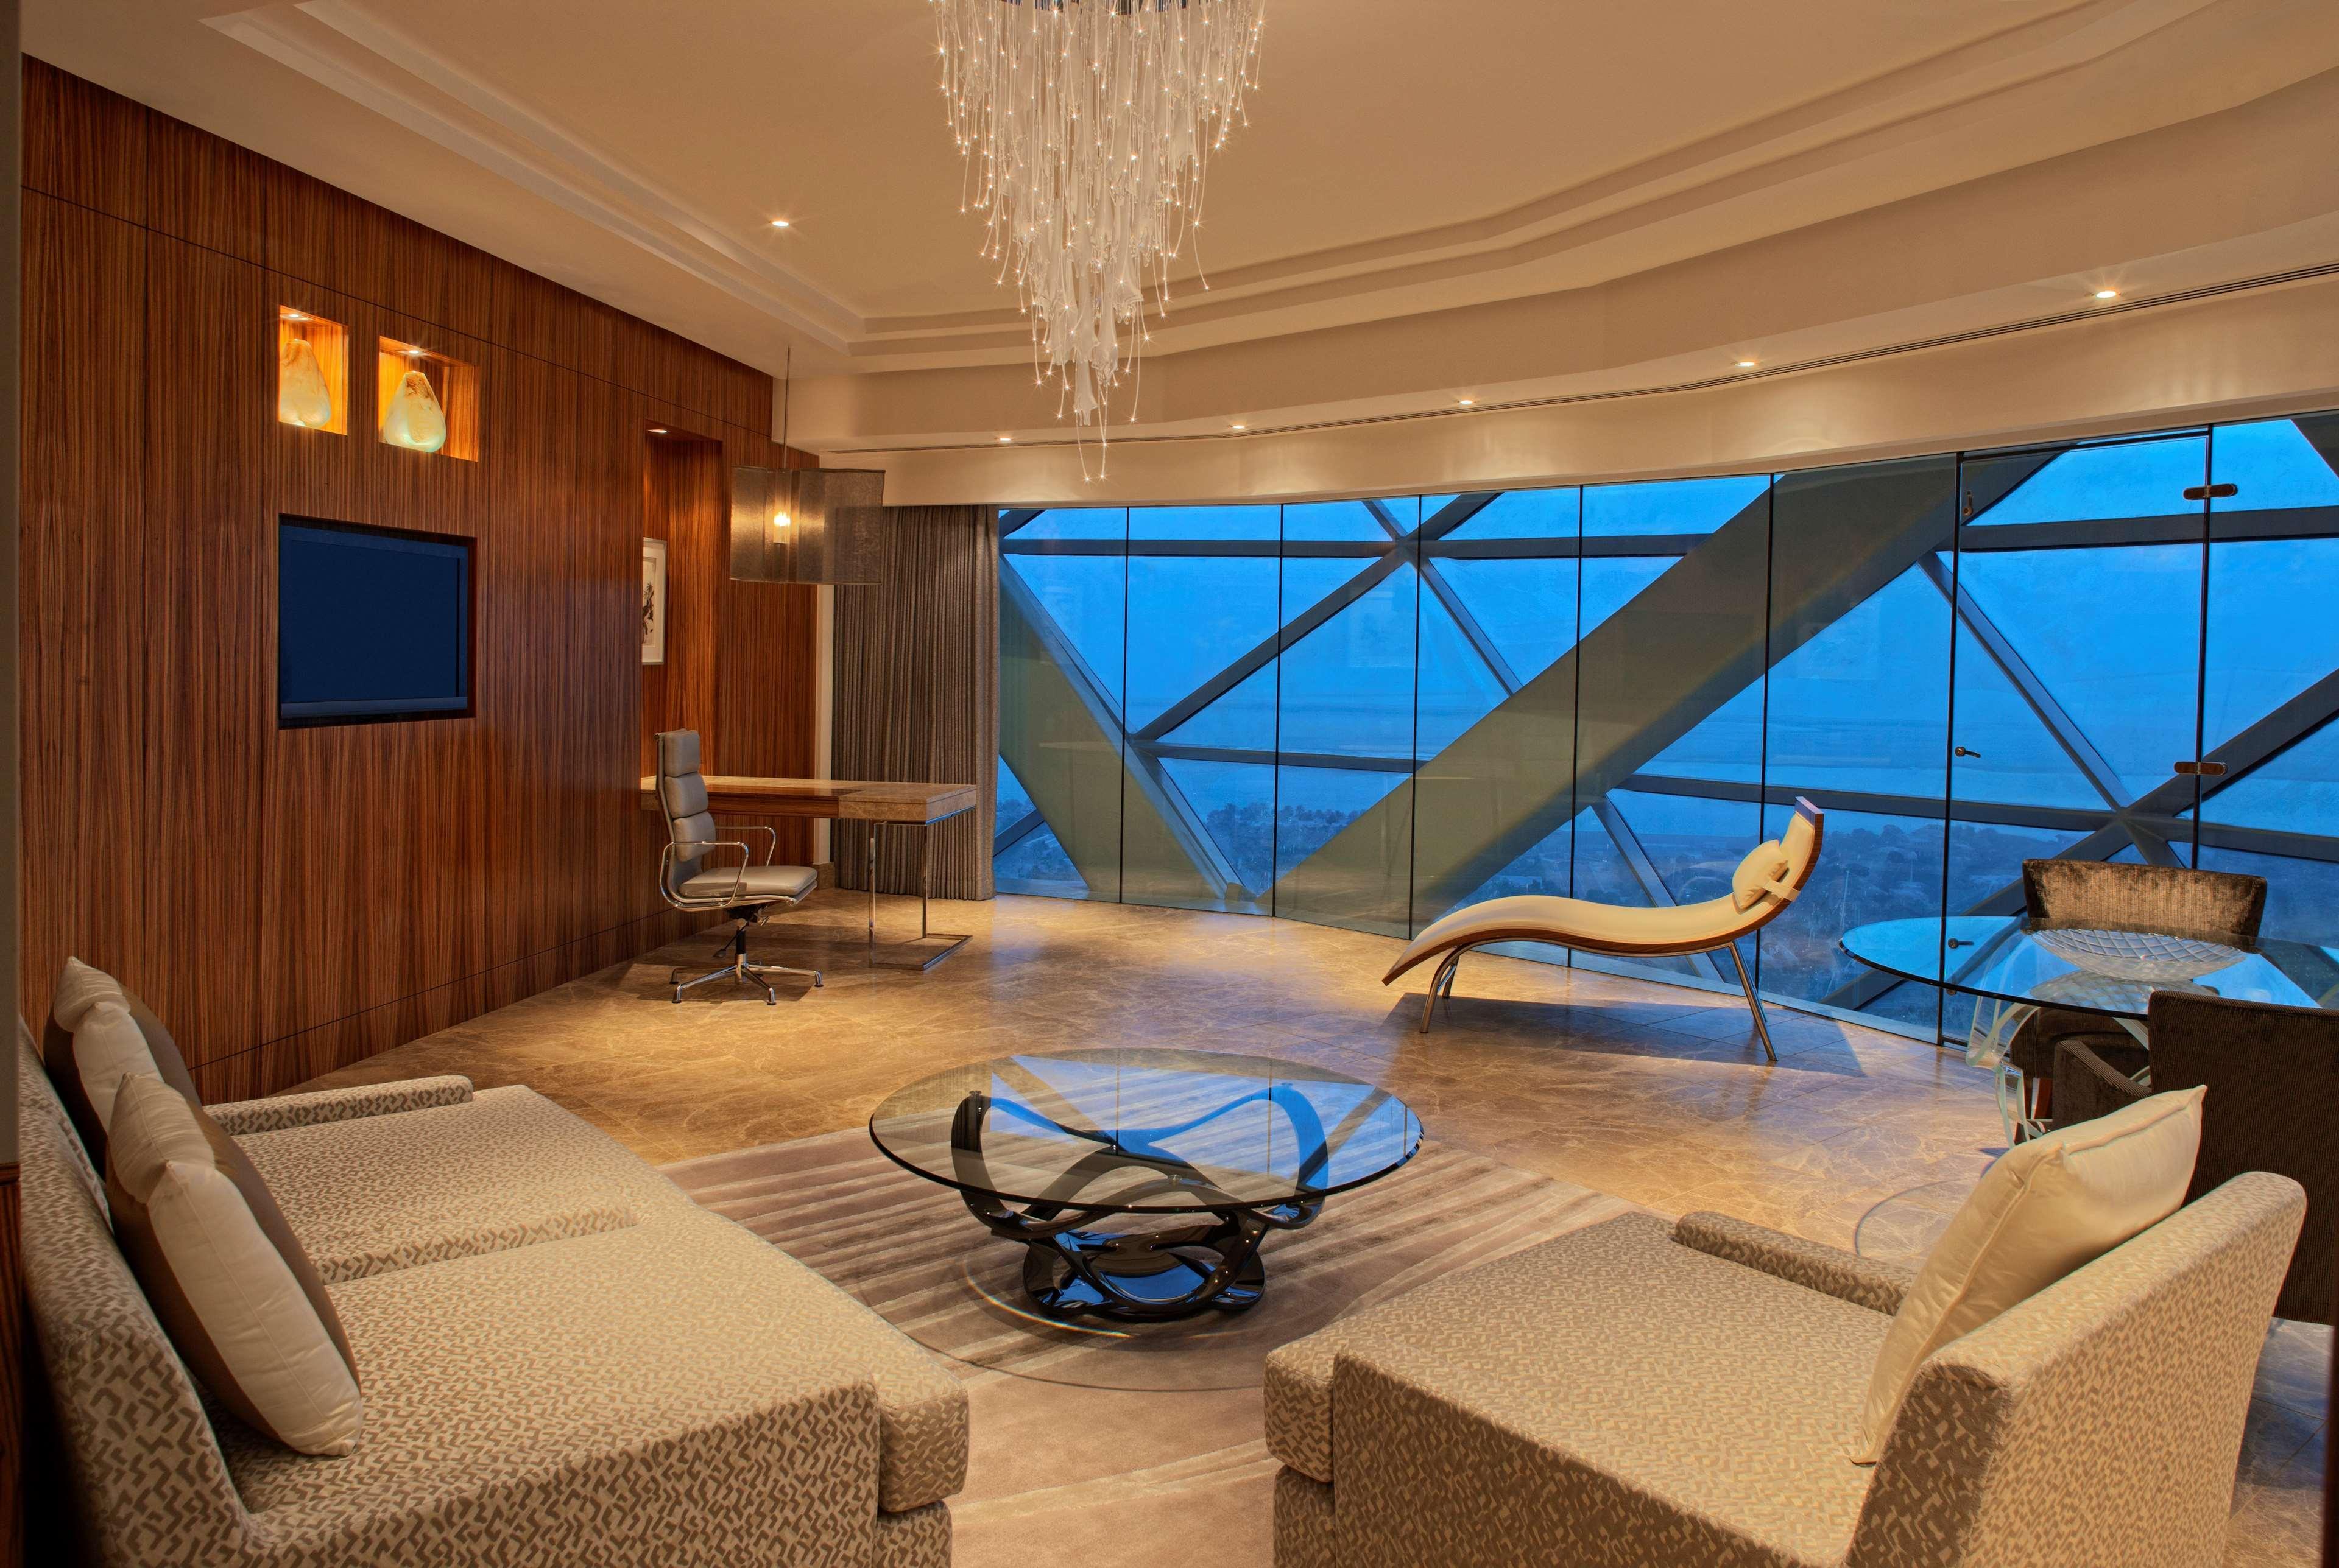 안다즈 캐피탈 게이트 아부다비 - 어 컨셉 바이 하얏트 호텔 시설 사진